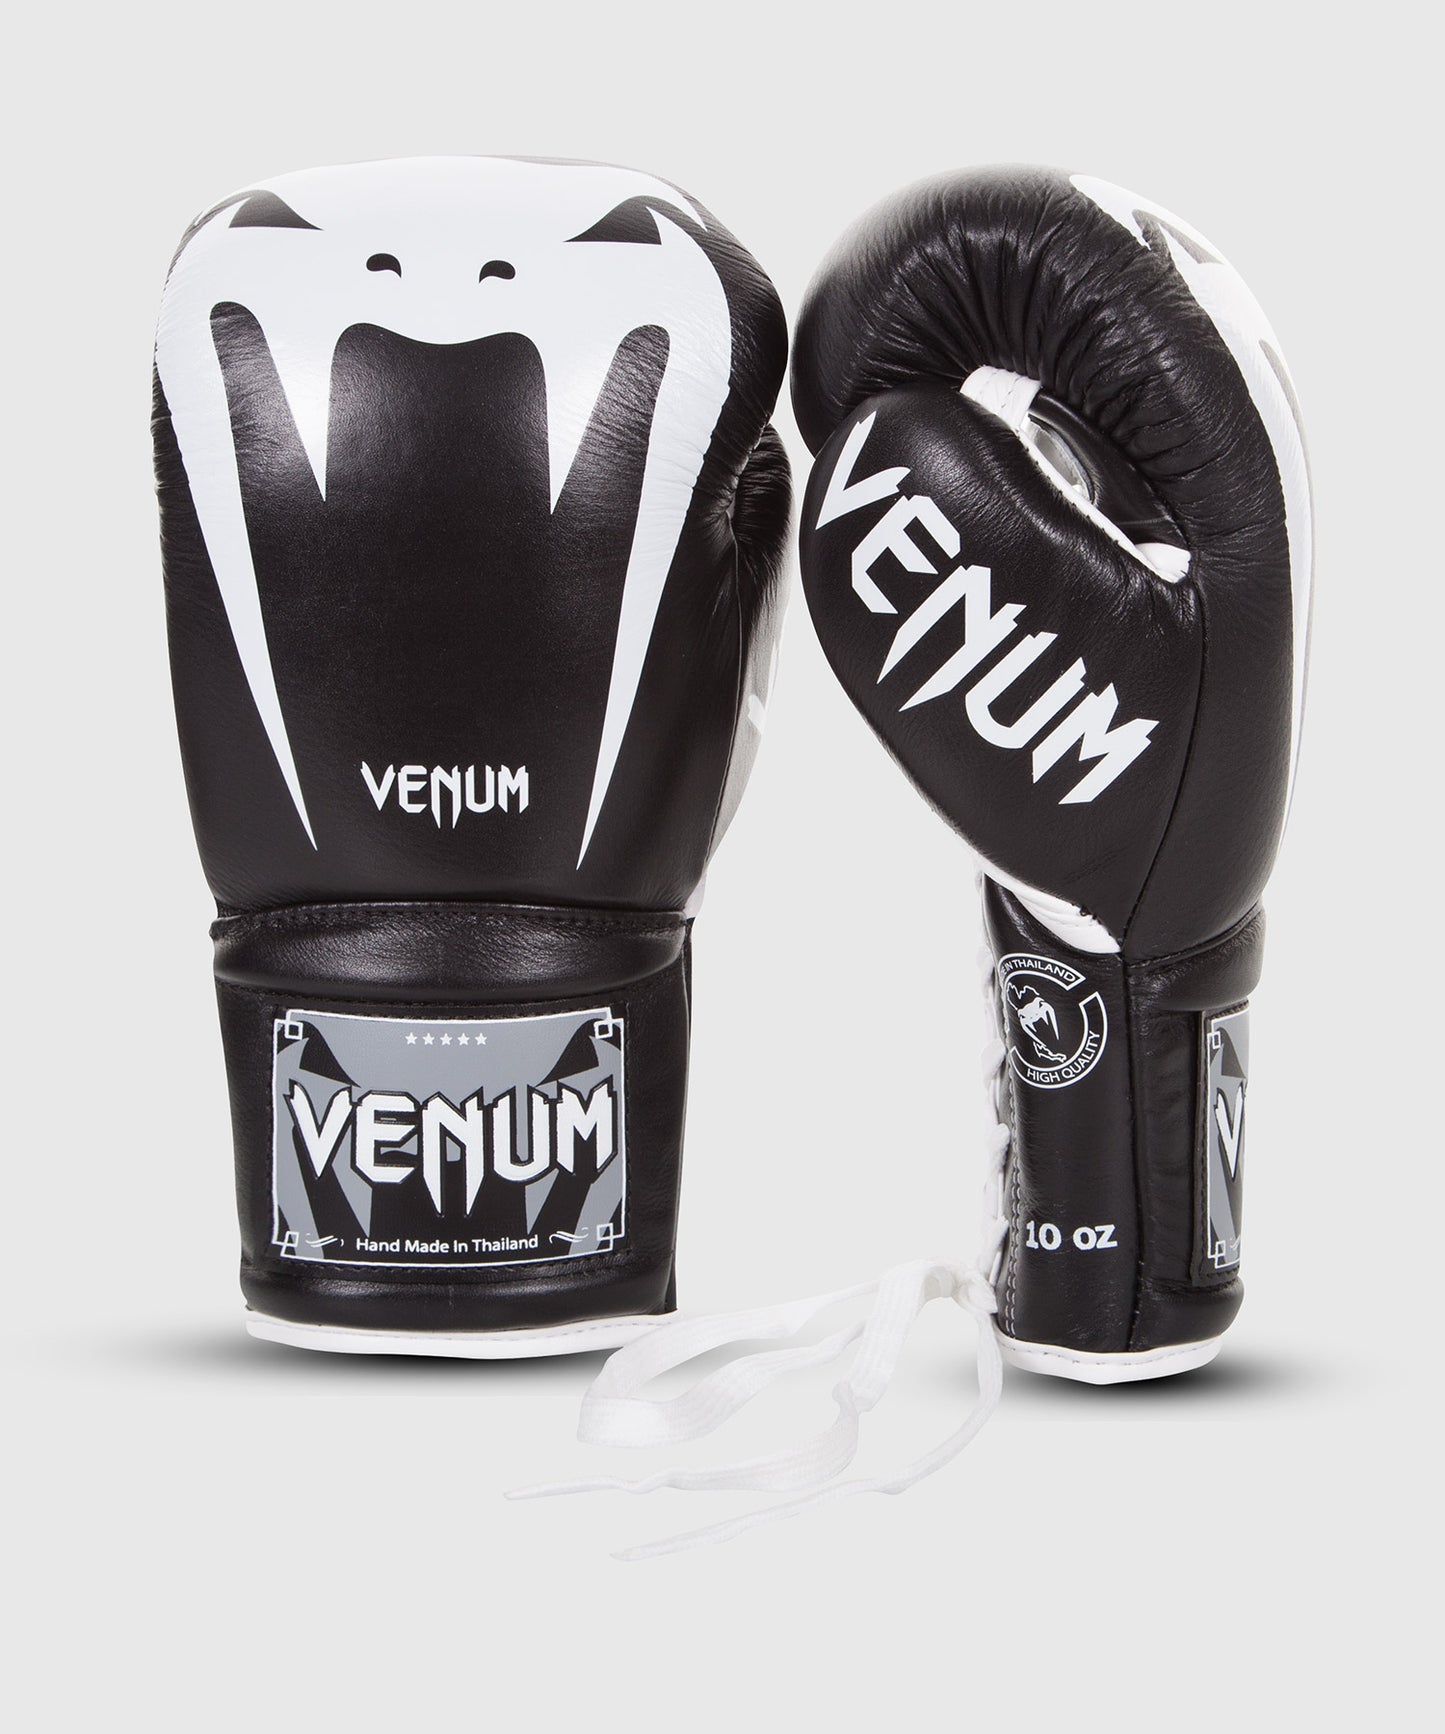 Guantes de Boxeo Venum Giant 3.0 - Cuero Nappa - Con cordones - Negro